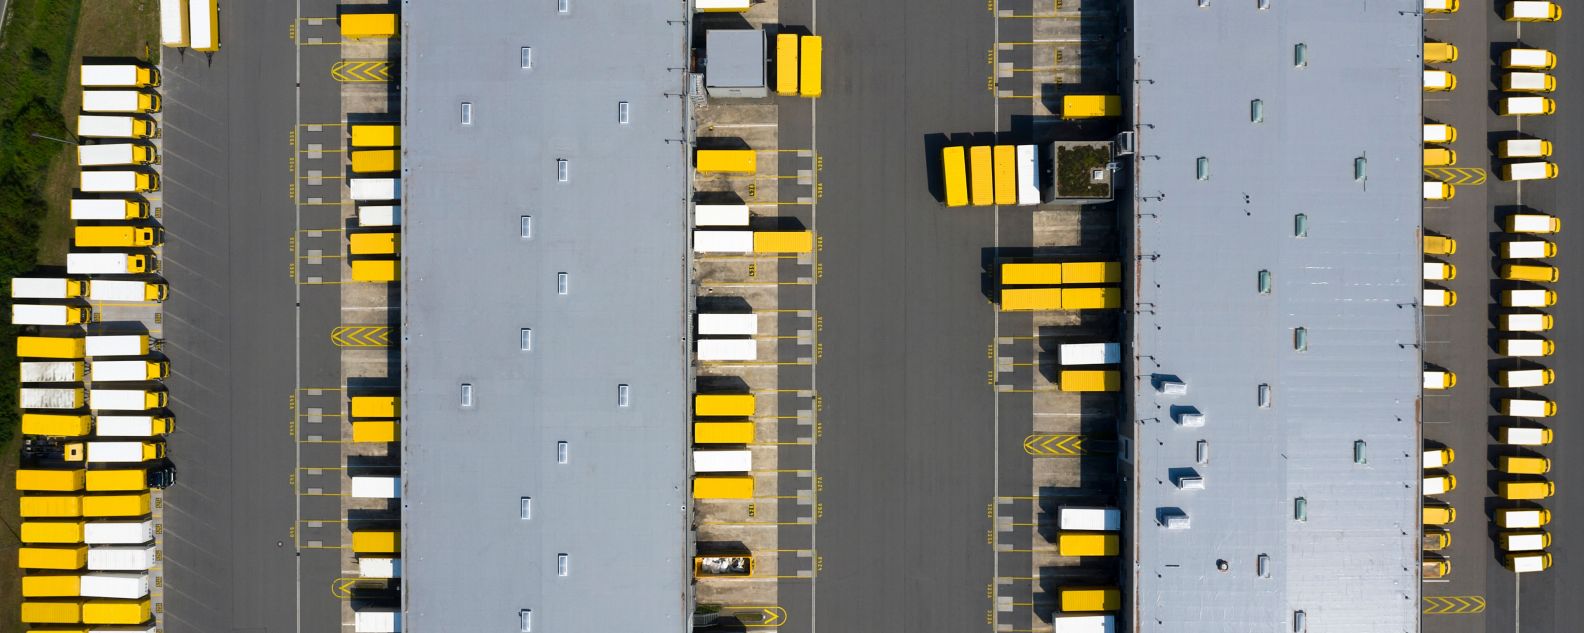 Vista aérea de contenedores de carga y almacén de distribución